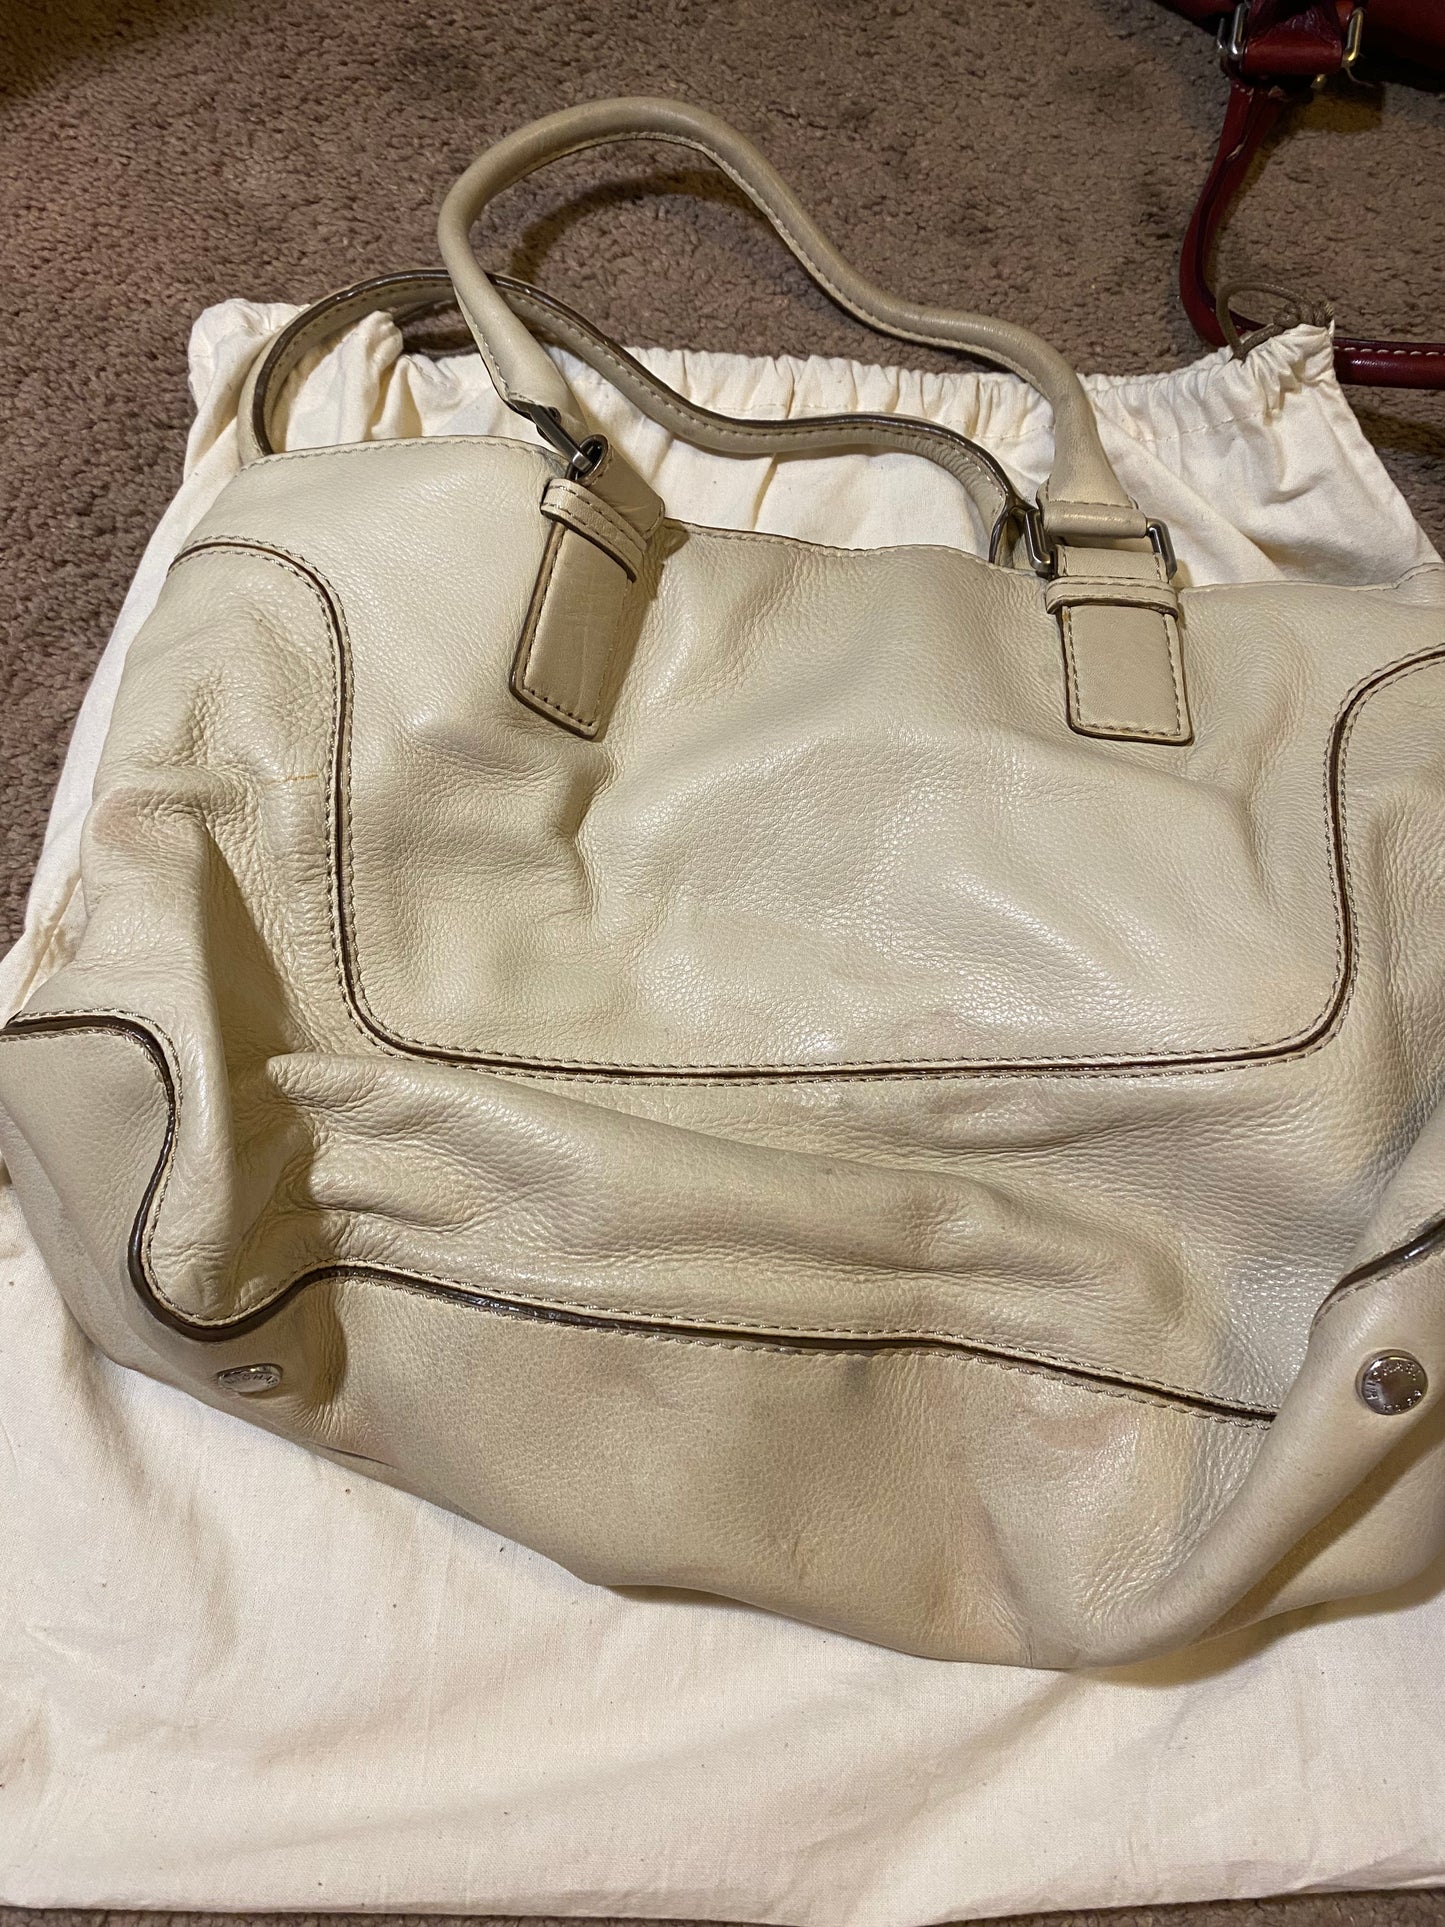 Used Bag: Ivory Michael Kors Bag